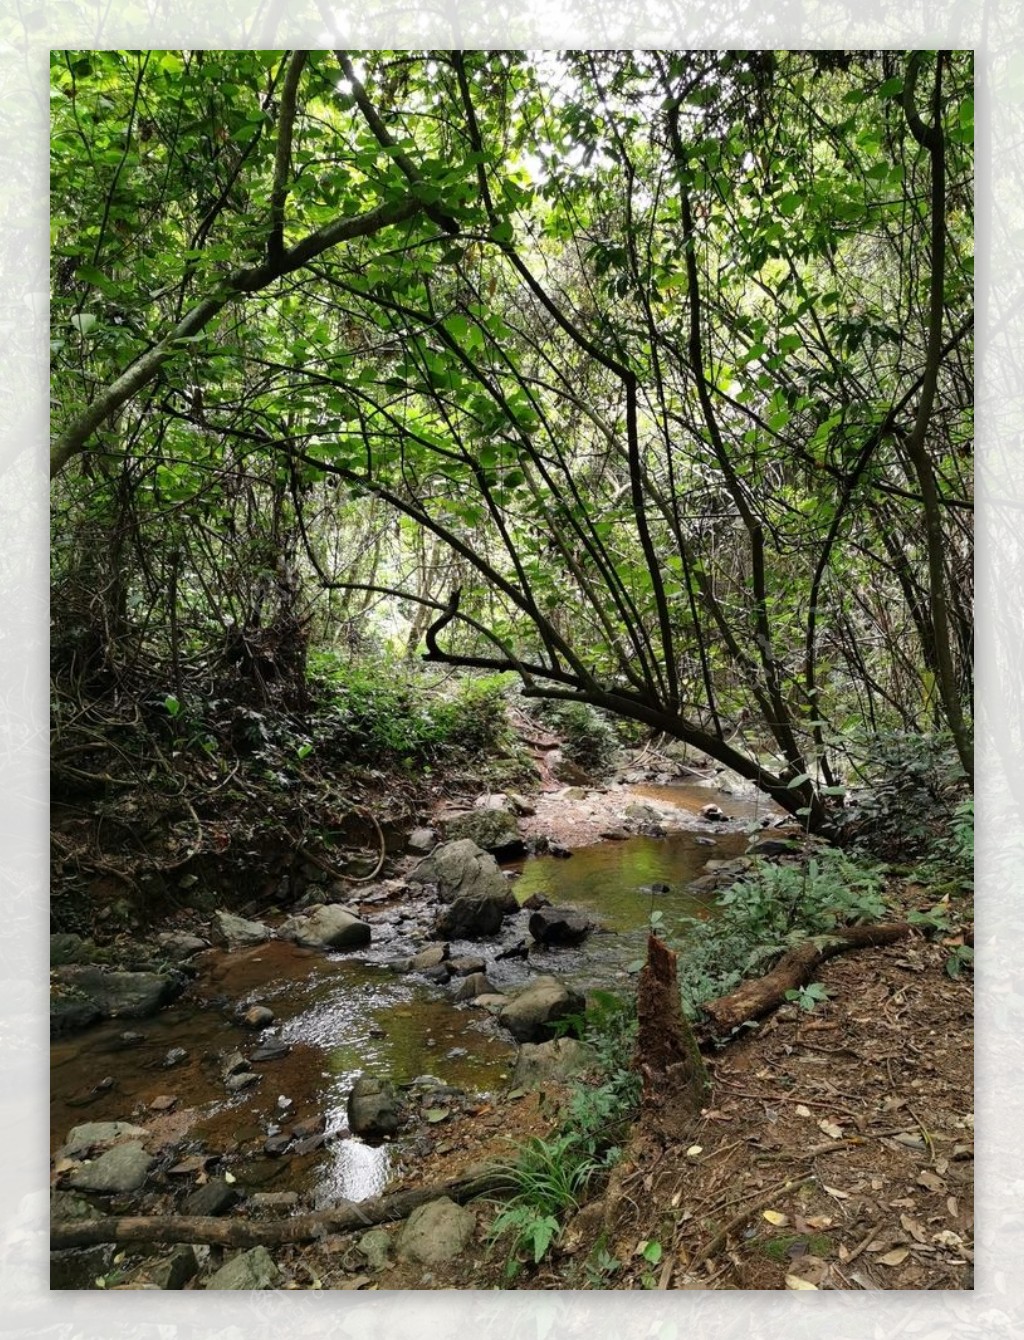 原始森林里的小溪流图片